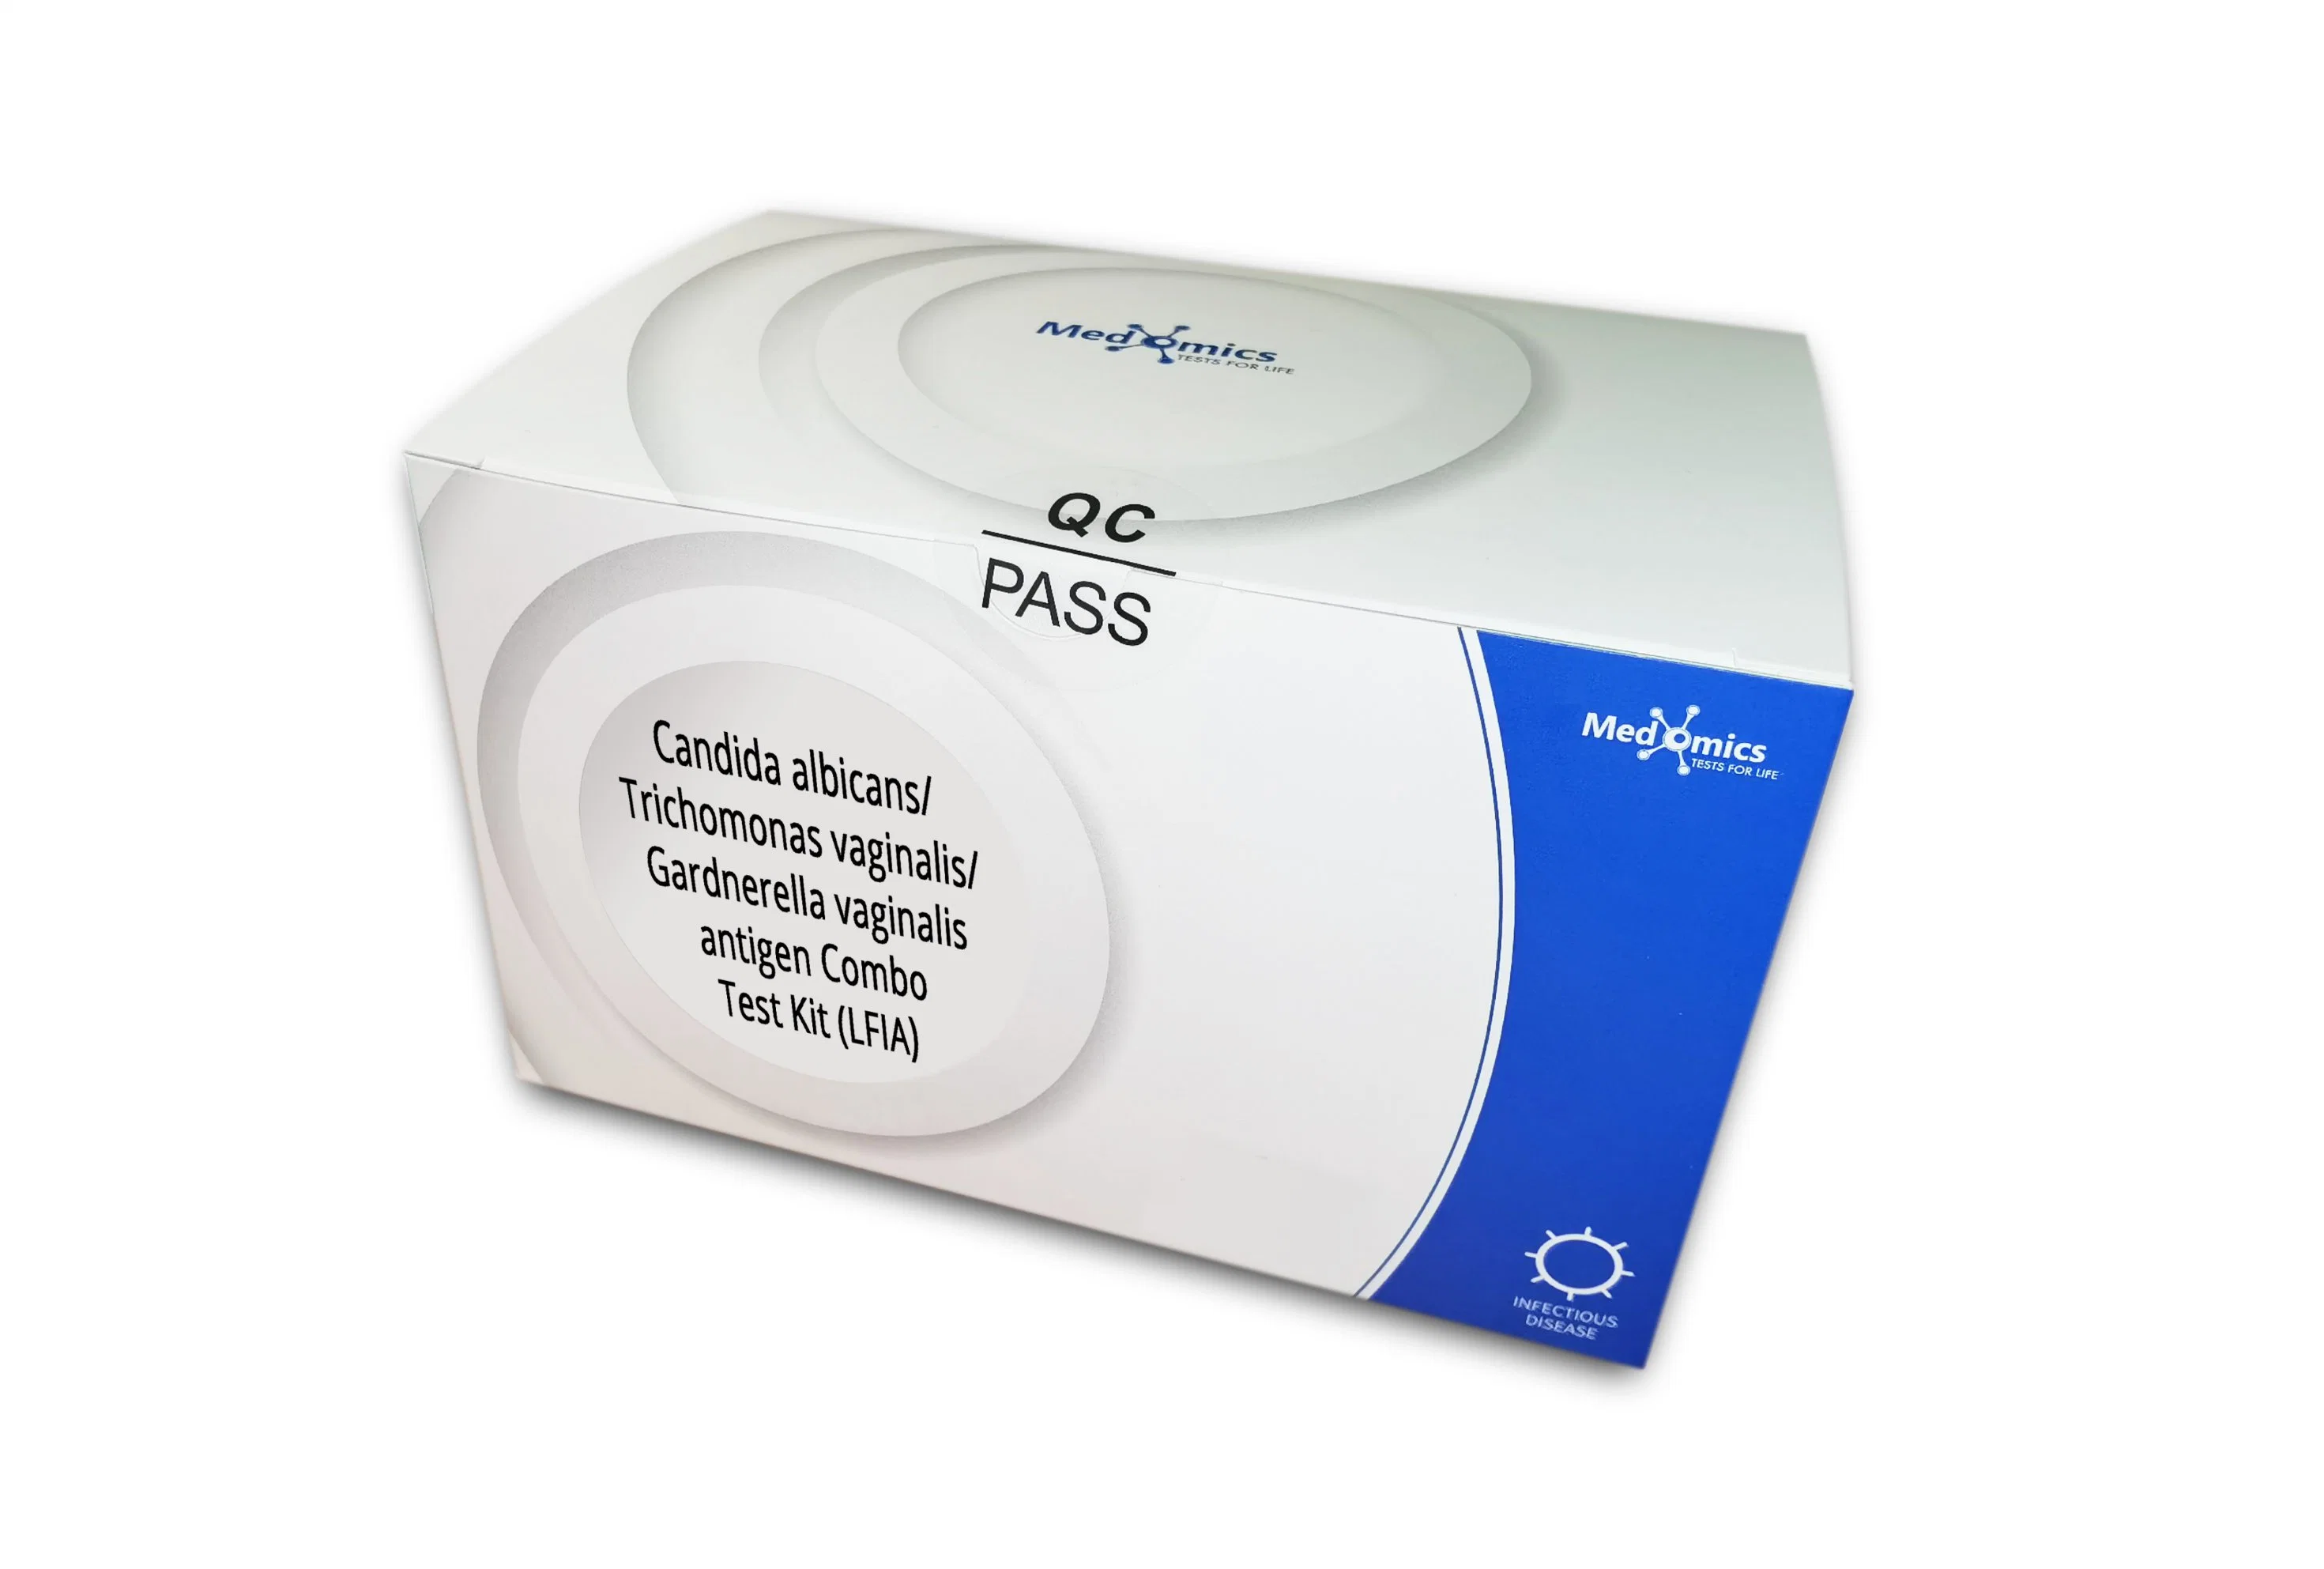 Candida albicans/Trichomonas vaginalis/Gardnerella vaginalis Diagnosis Antigen Combo Test Kit (LFIA)